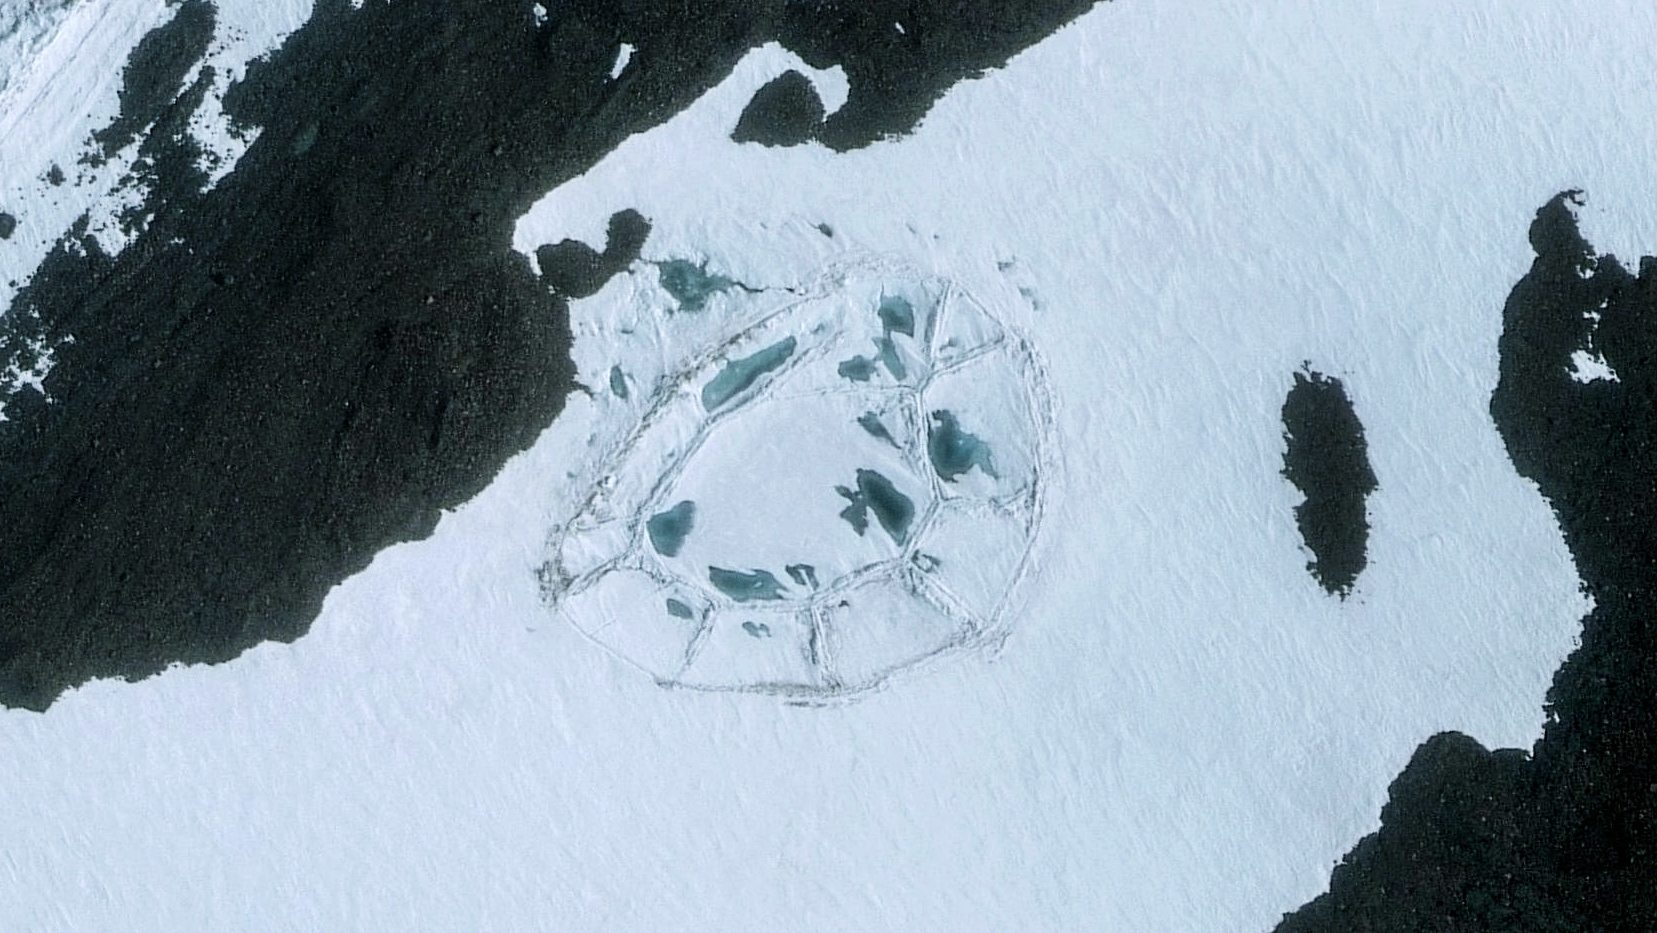 یک سازه بیضی شکل بزرگ در قطب جنوب پیدا شد: تاریخ باید بازنویسی شود! 2